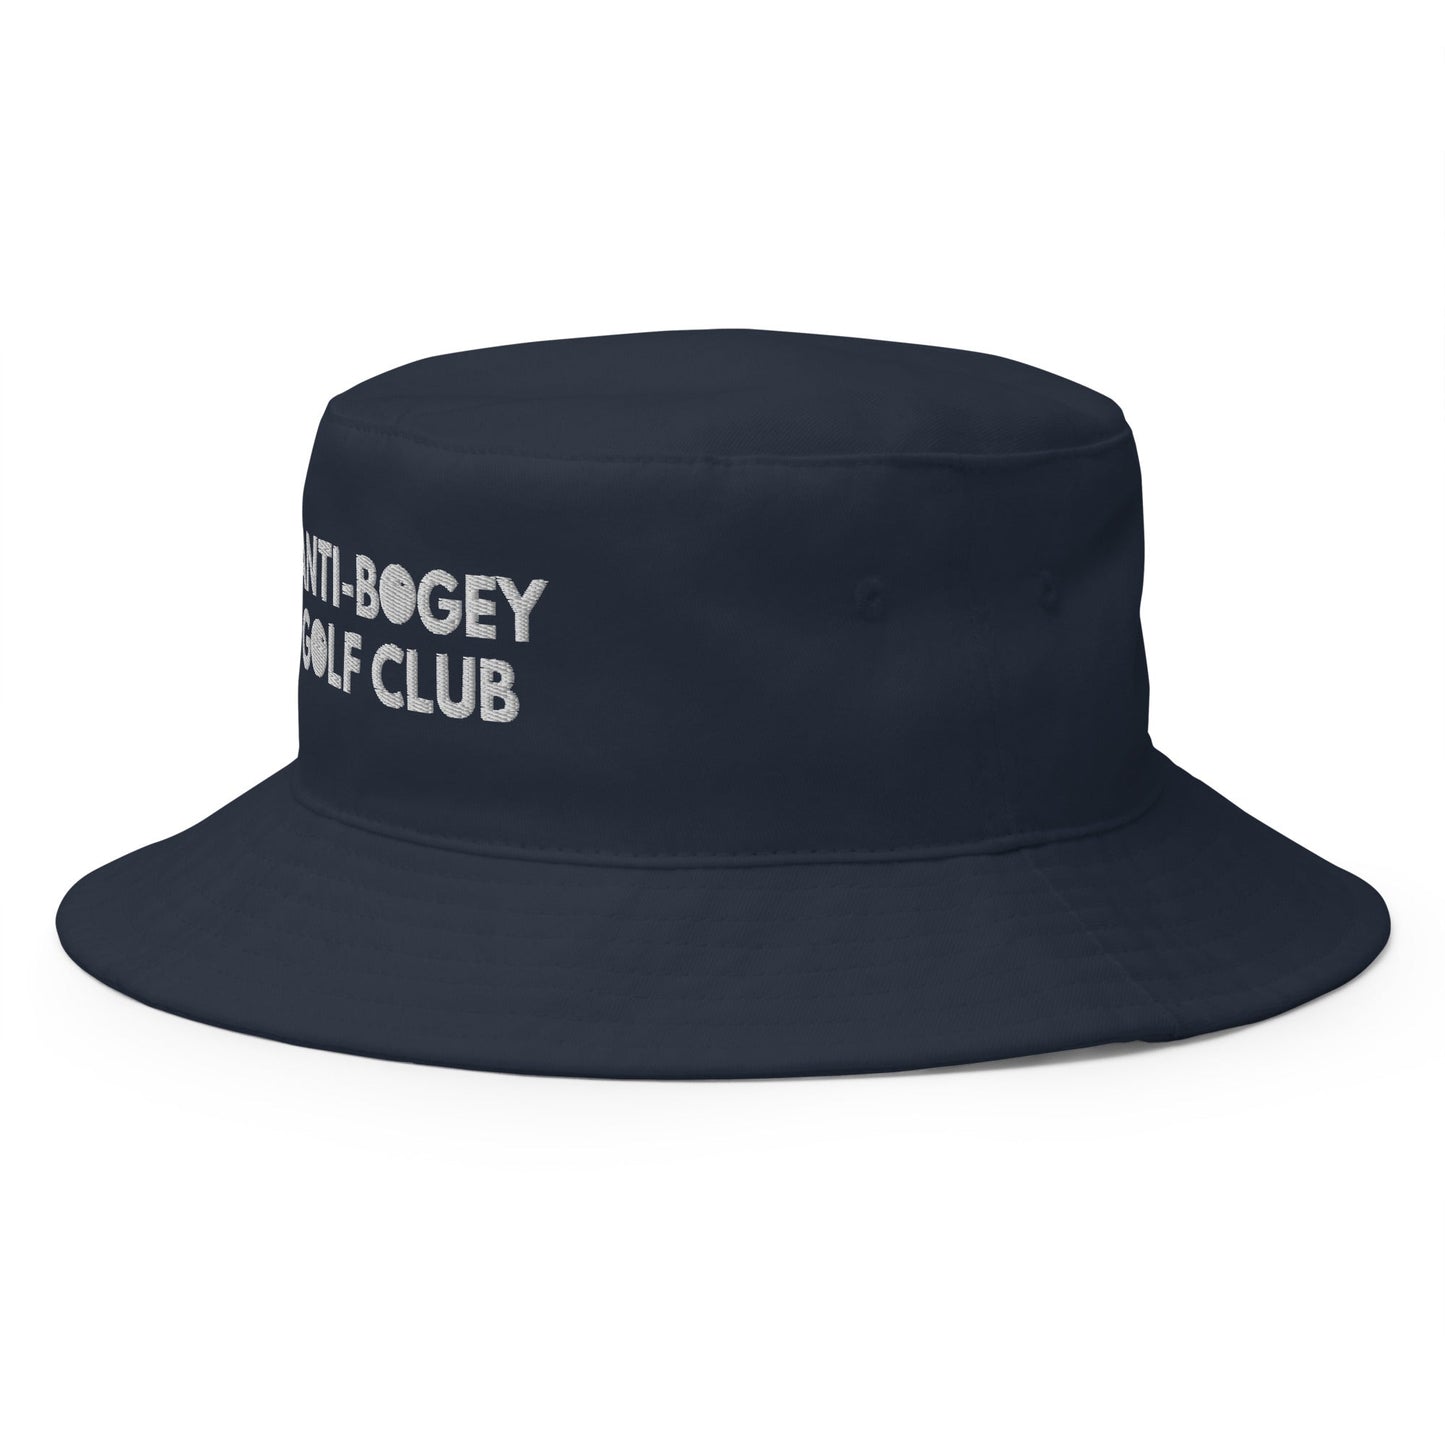 Funny Golfer Gifts  Bucket Hat Anti-Bogey Golf Club Hat Bucket Hat